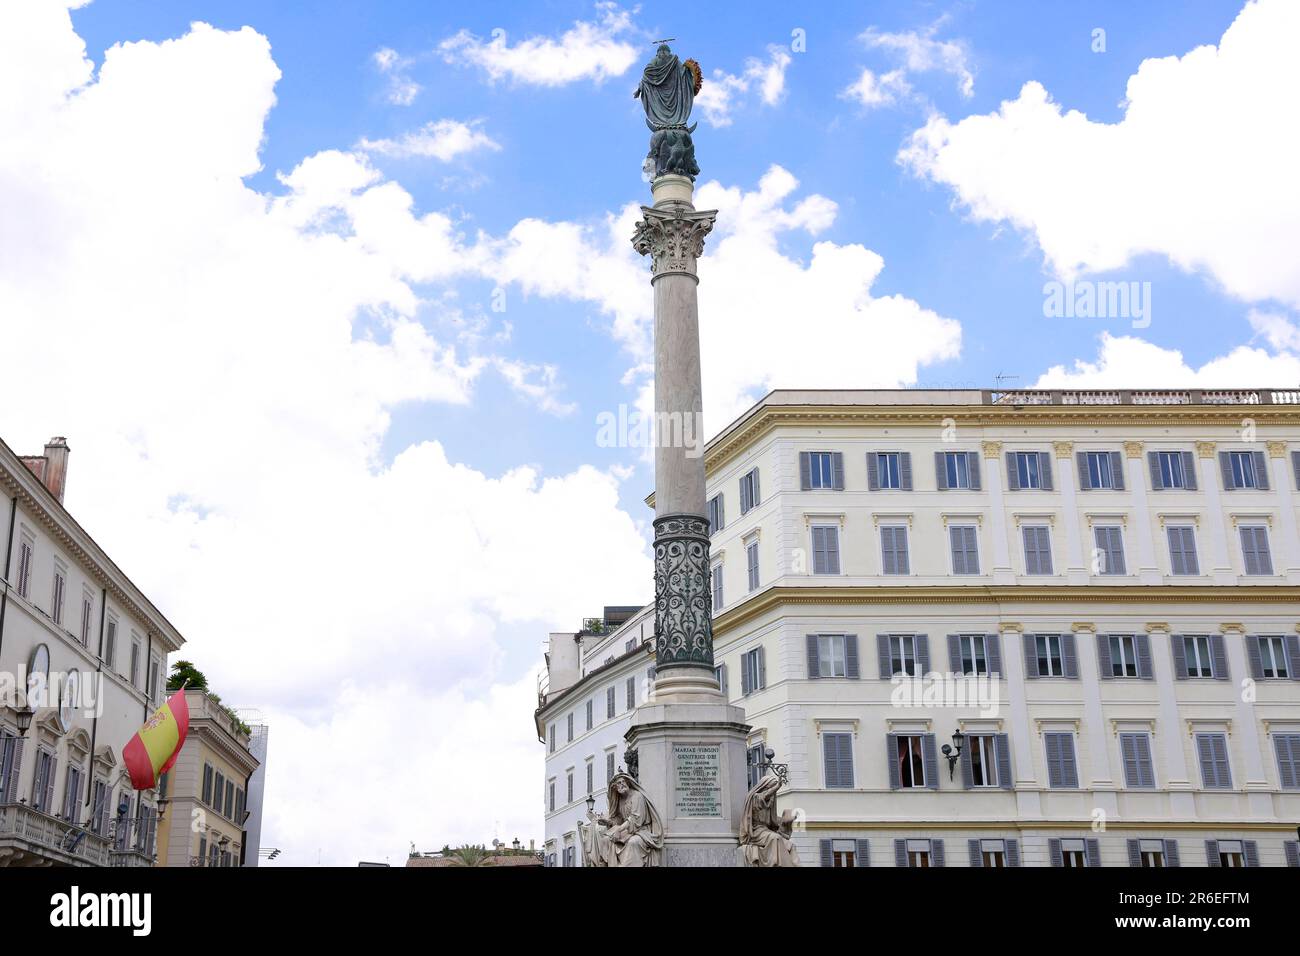 Piazza di Spagna, les places les plus célèbres de Rome, Italie Banque D'Images